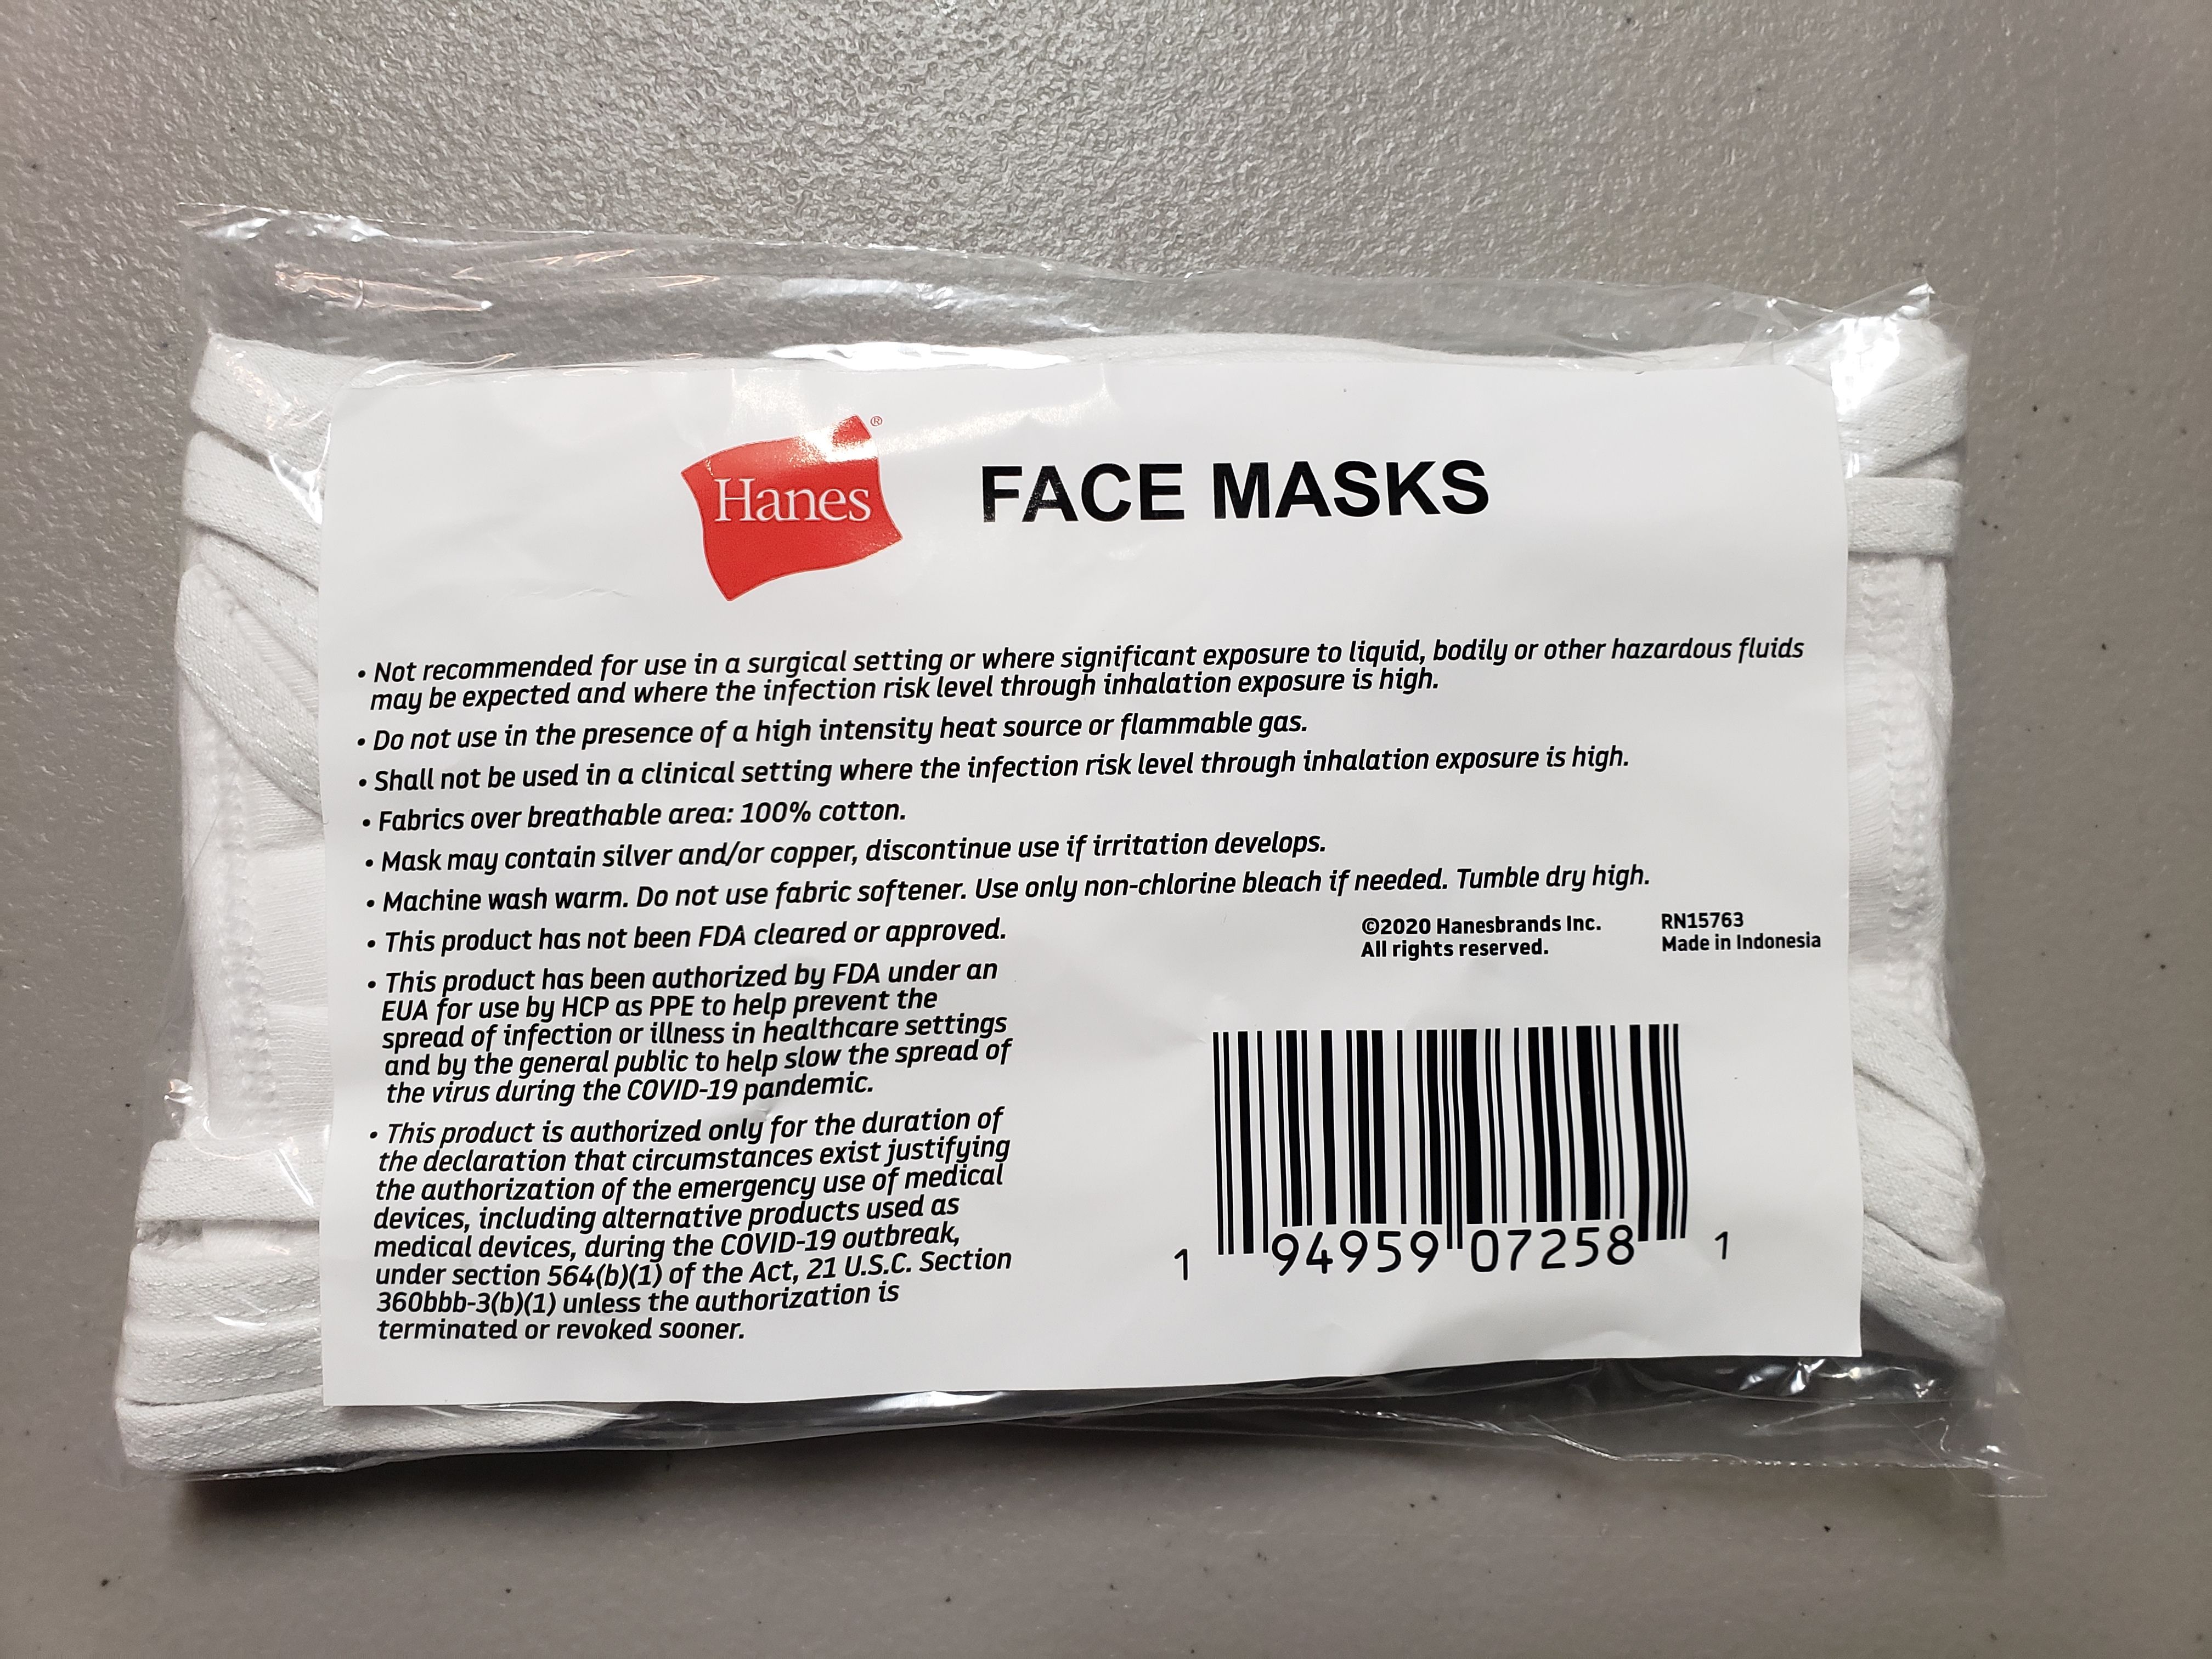 Washable face mask branded LV